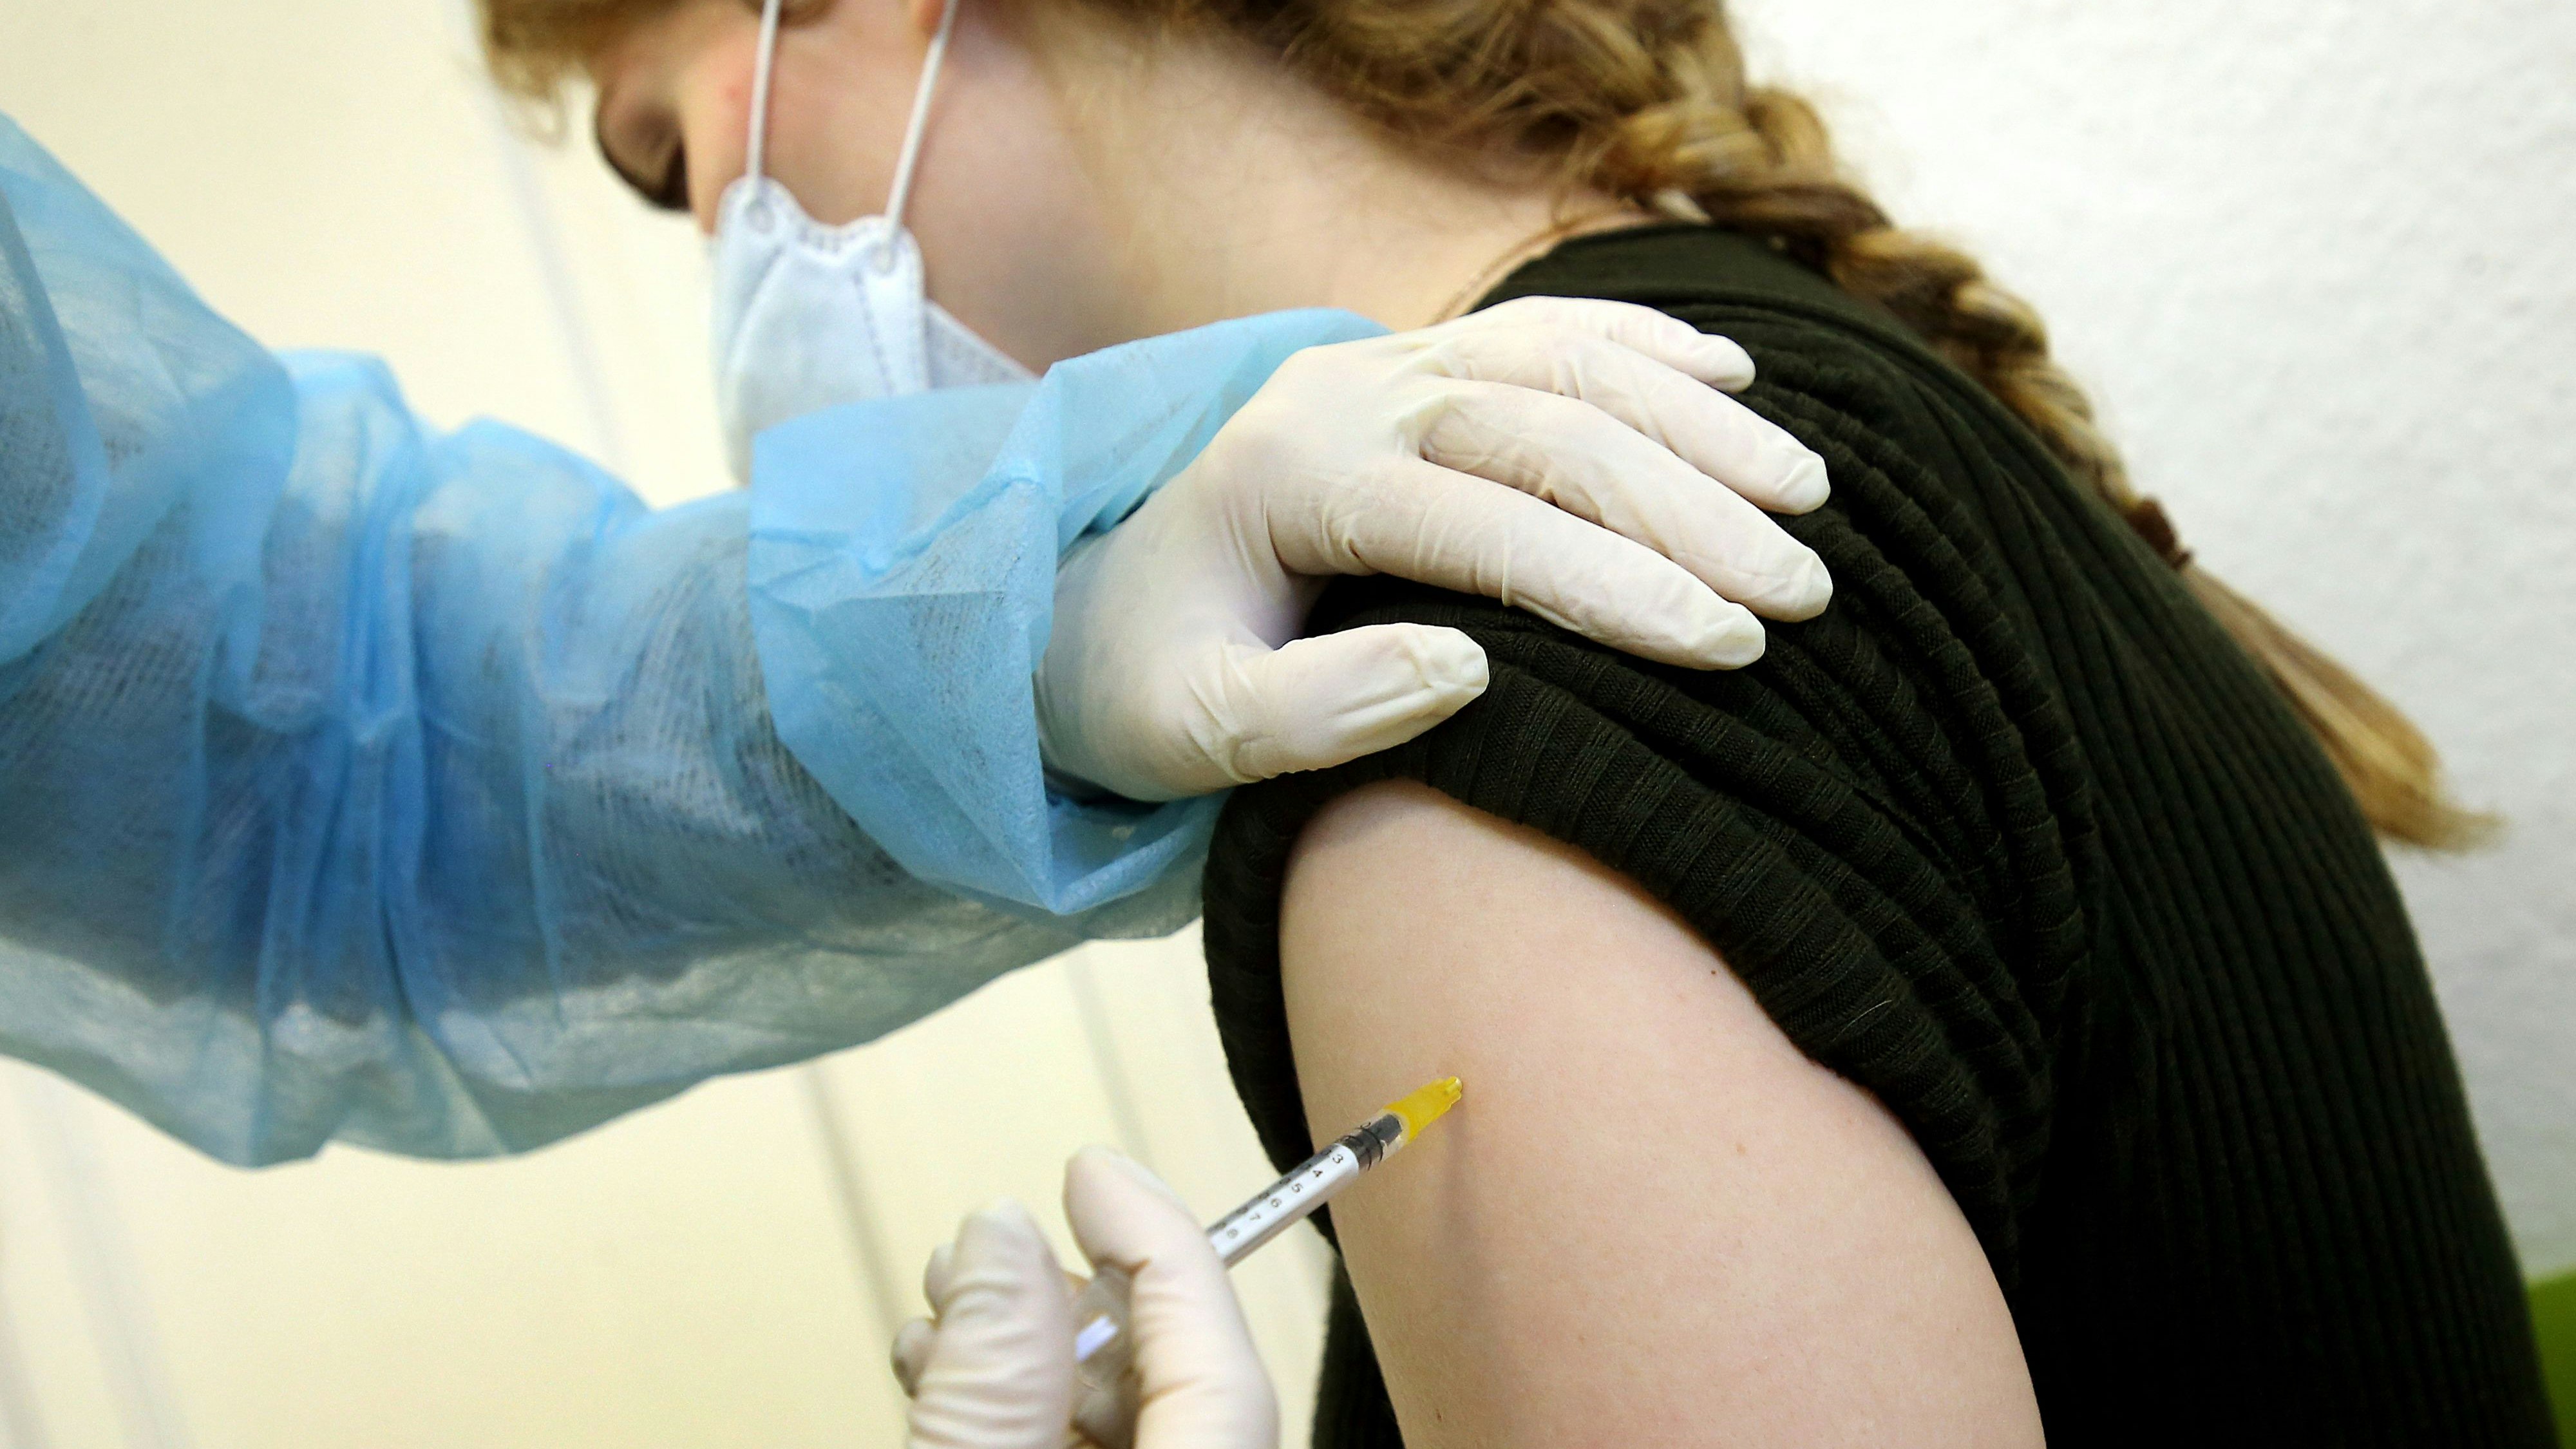 Die mobilen Impfteams sind vor Ort weiterhin im Einsatz. Wenn die neuen Impfstoffe kommen, soll es auch wieder spezielle Angebote für vulnerable Gruppen geben. Foto: dpa/Kumm